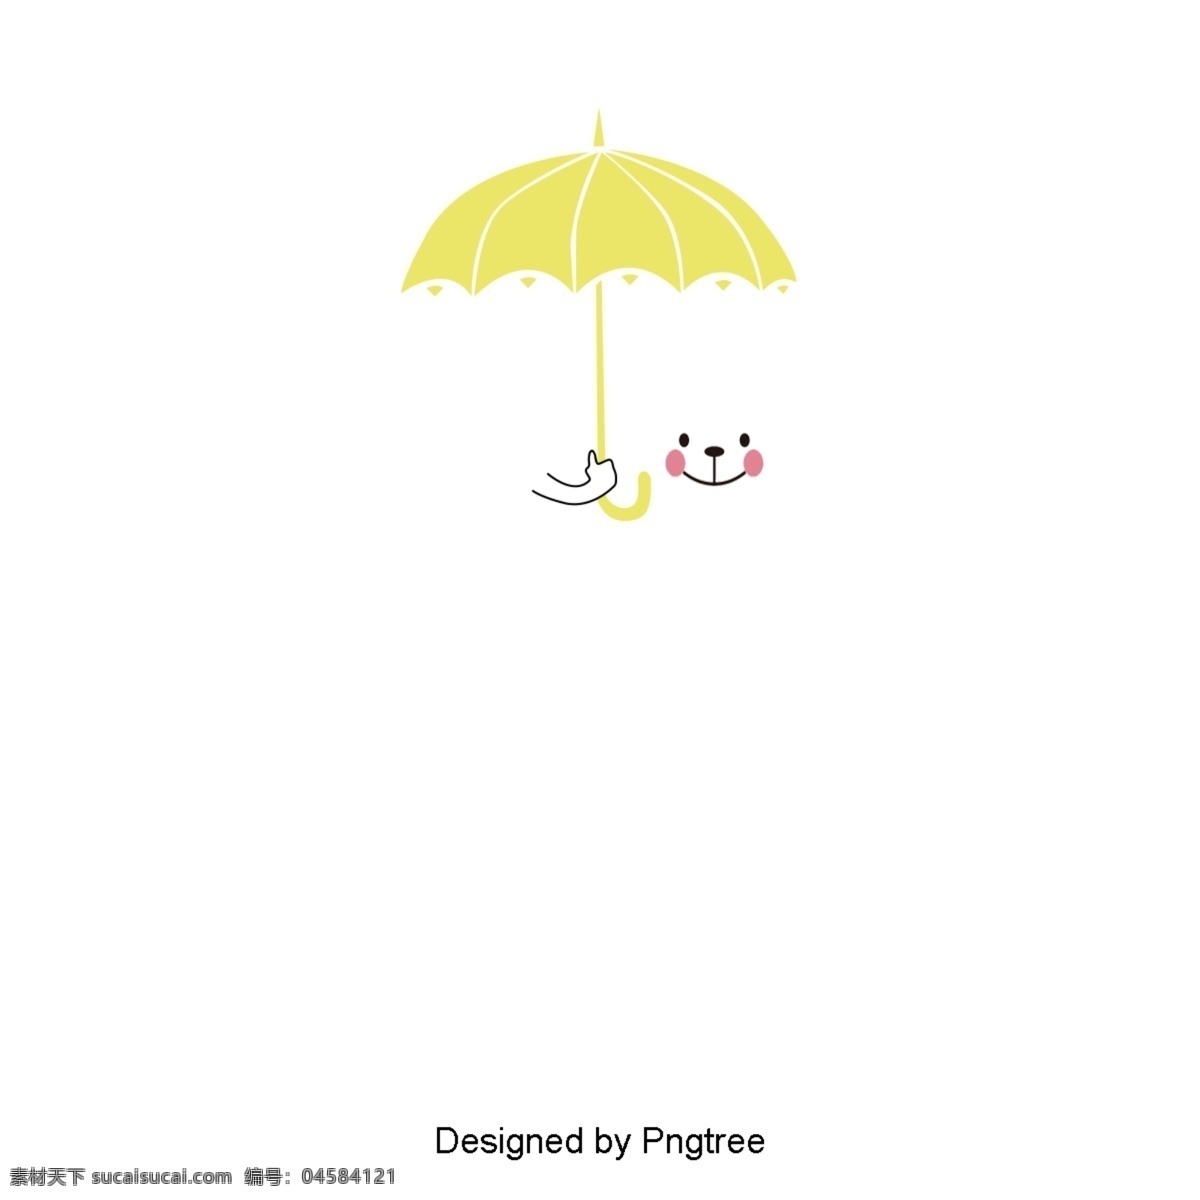 美丽 凉爽 的卡 通 云 雨天 漂亮 酷 卡通 手绘 可爱 云雨 天气 雨伞 水滴